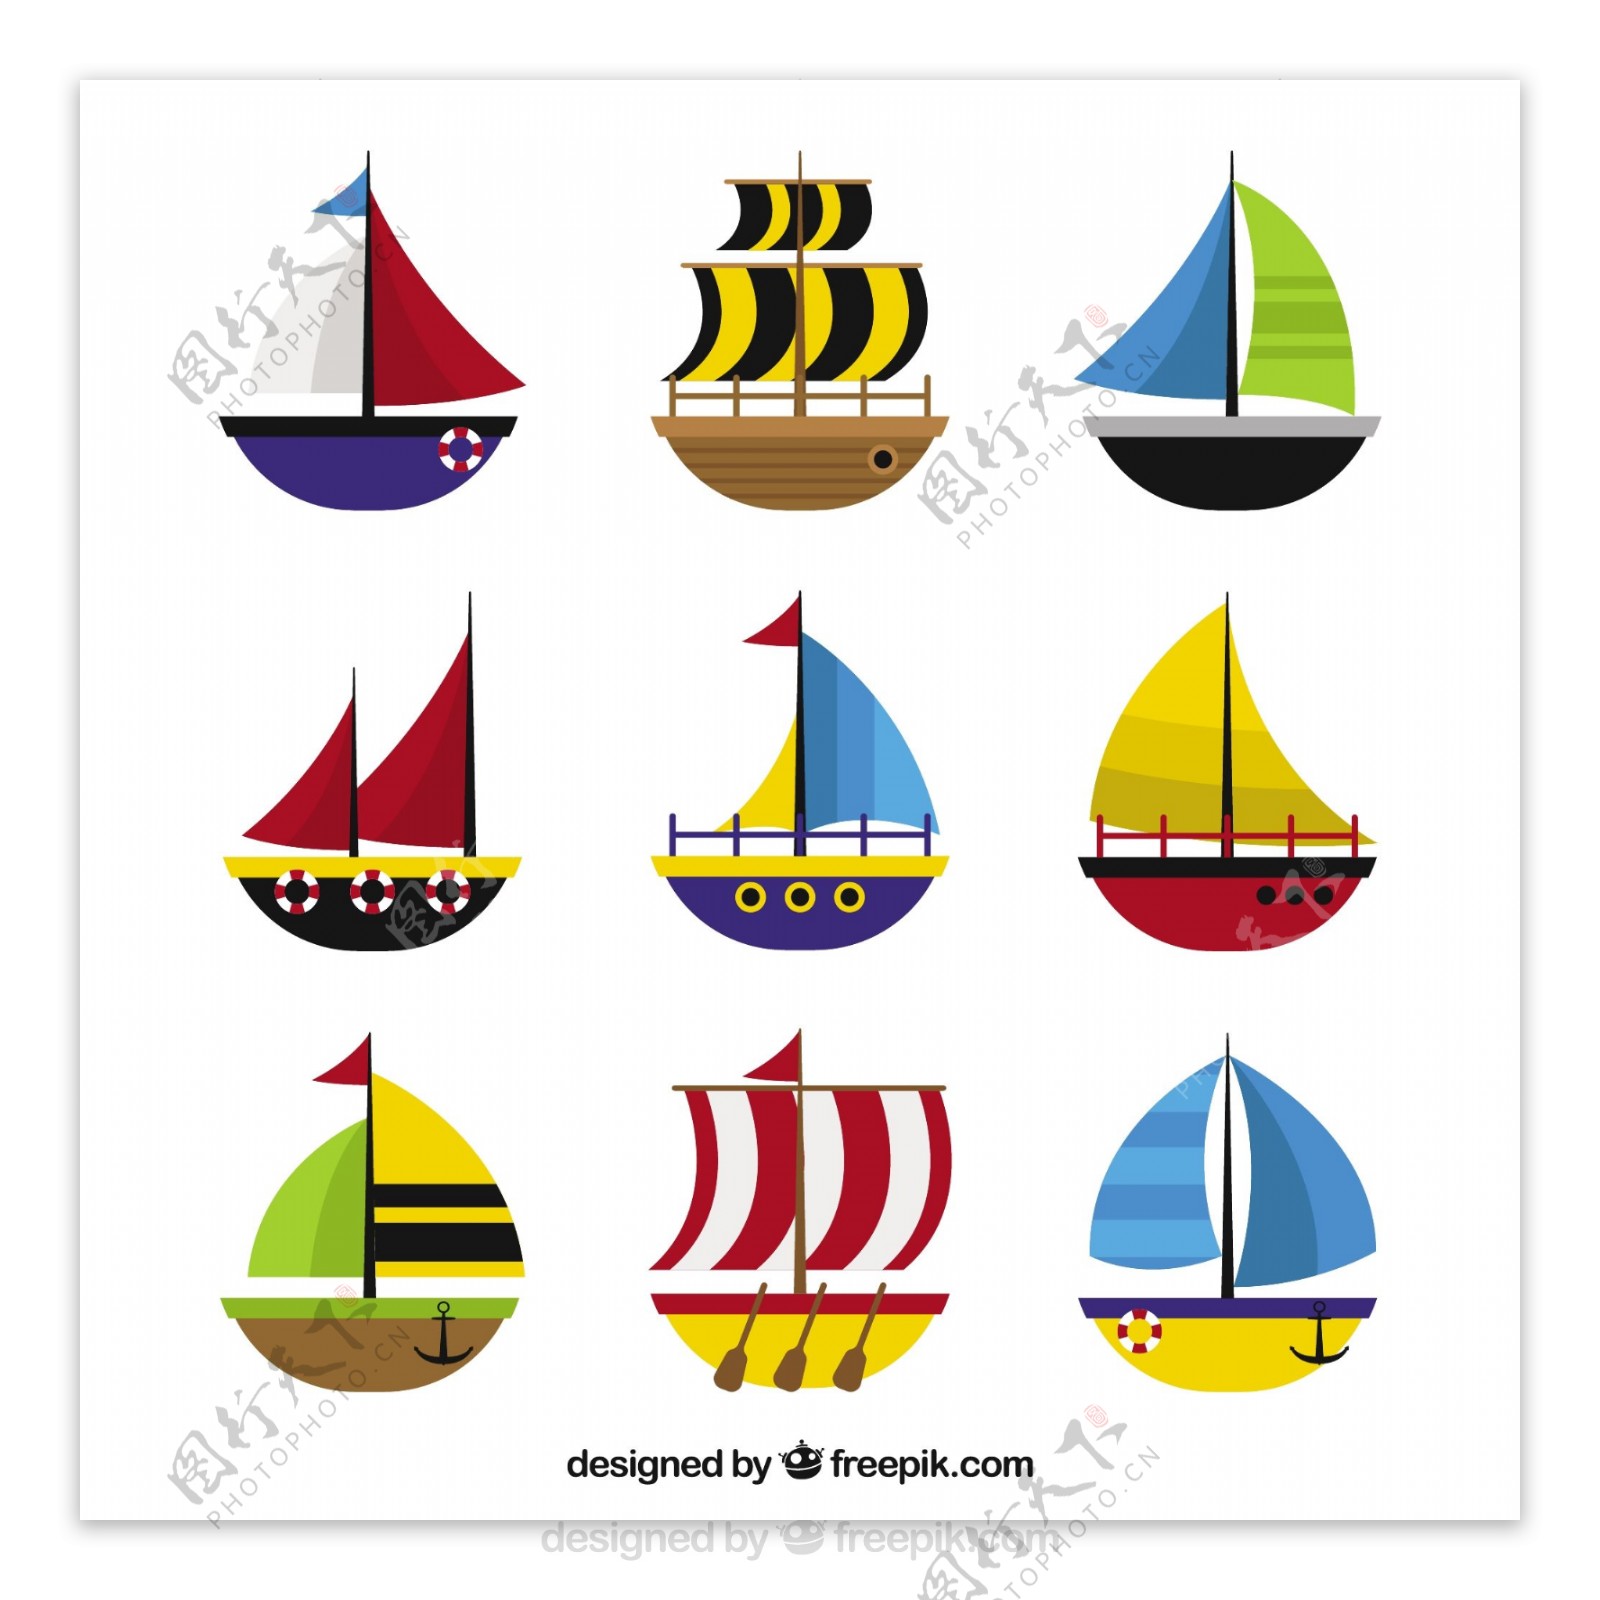 手绘彩色扁平风格彩色帆船图标